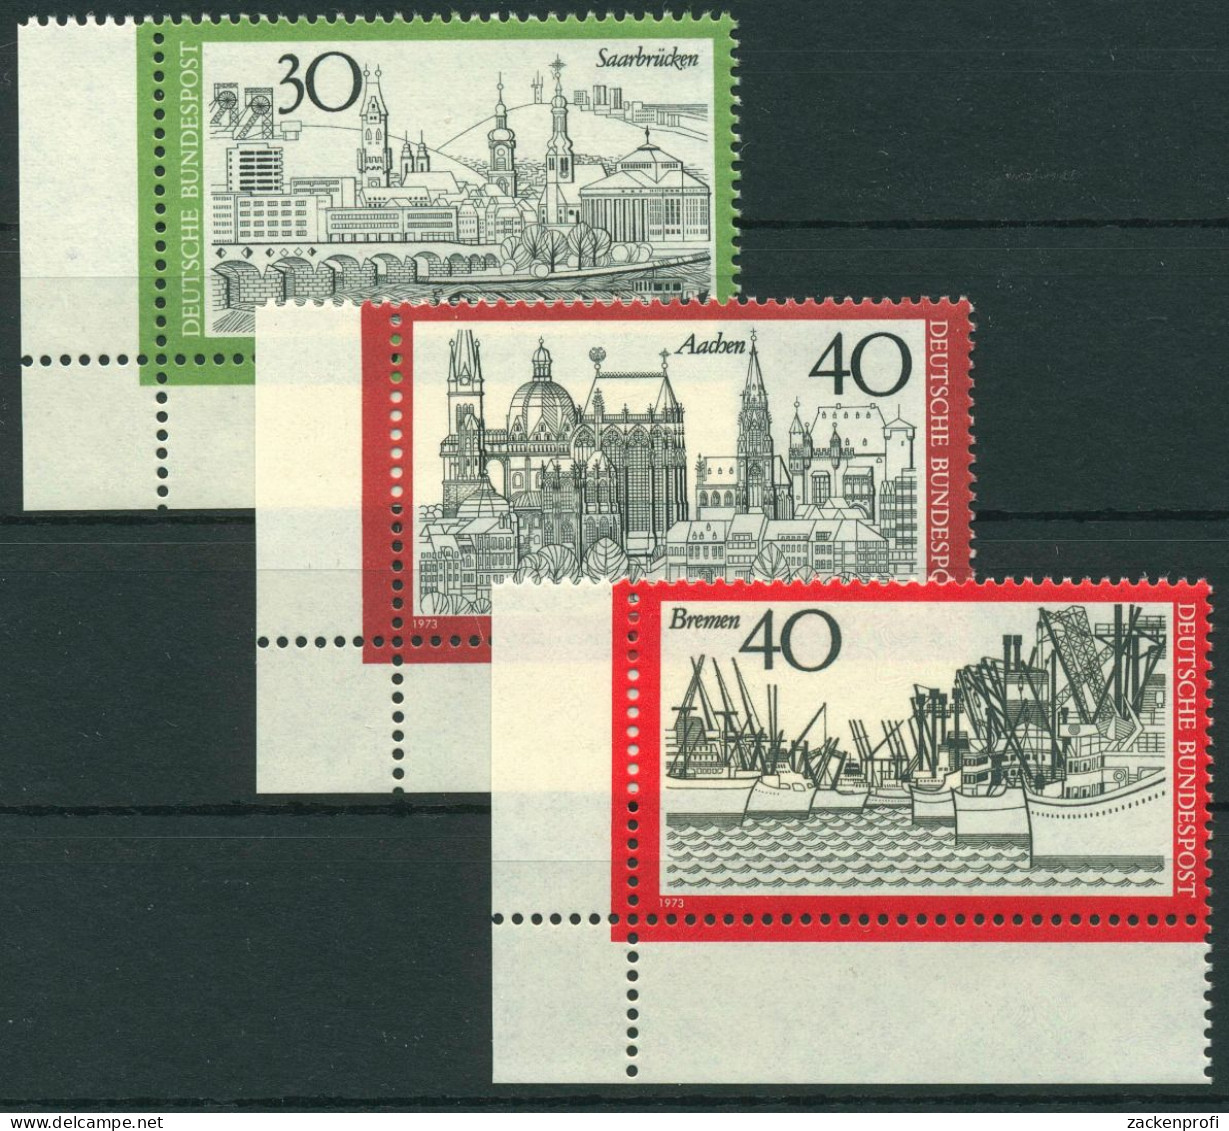 Bund 1973 Saarbrücken Aachen Bremen 787/89 Ecke 3 Unten Links Postfrisch (E913) - Unused Stamps